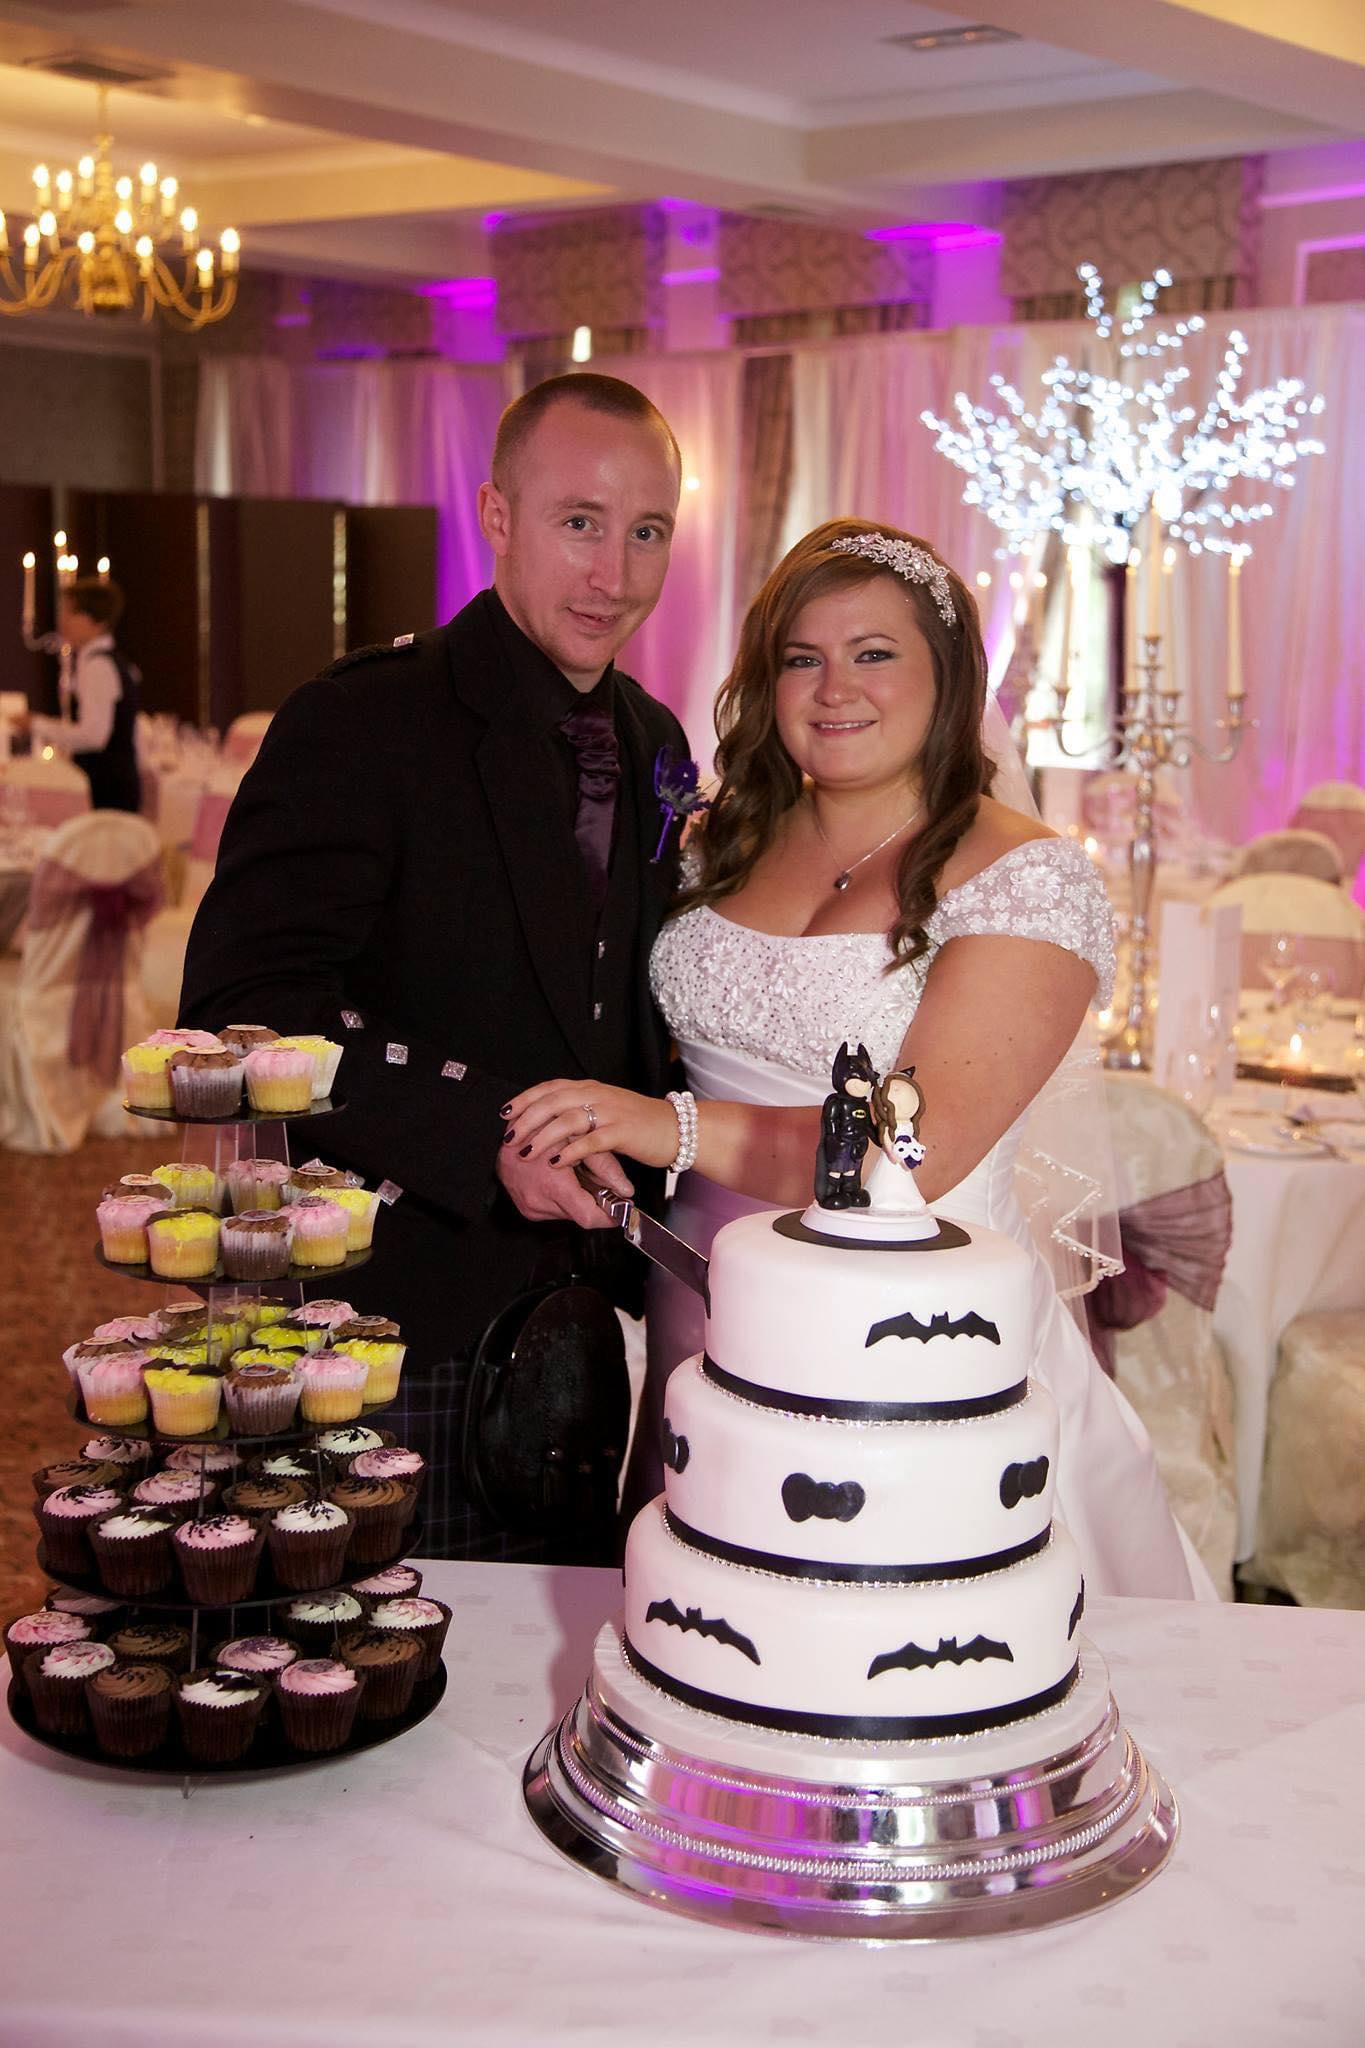 Lynn and David on their wedding day in 2013